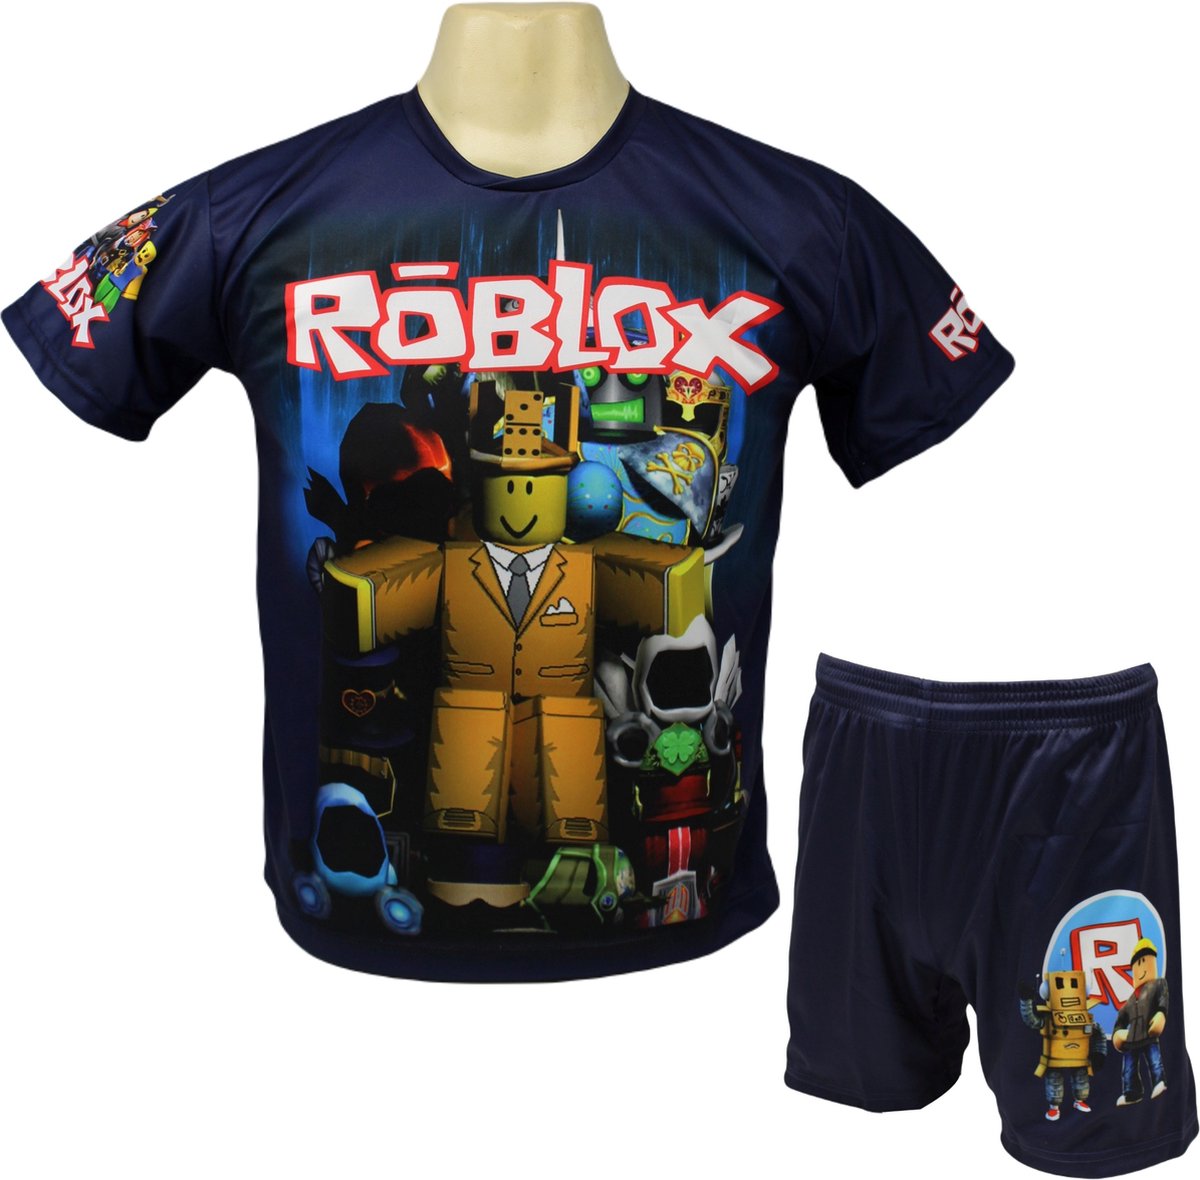 Roblox Shirt en Broekje - Roblox Kleding Tenue - Kinder tot Volwassen maten - Maat 128